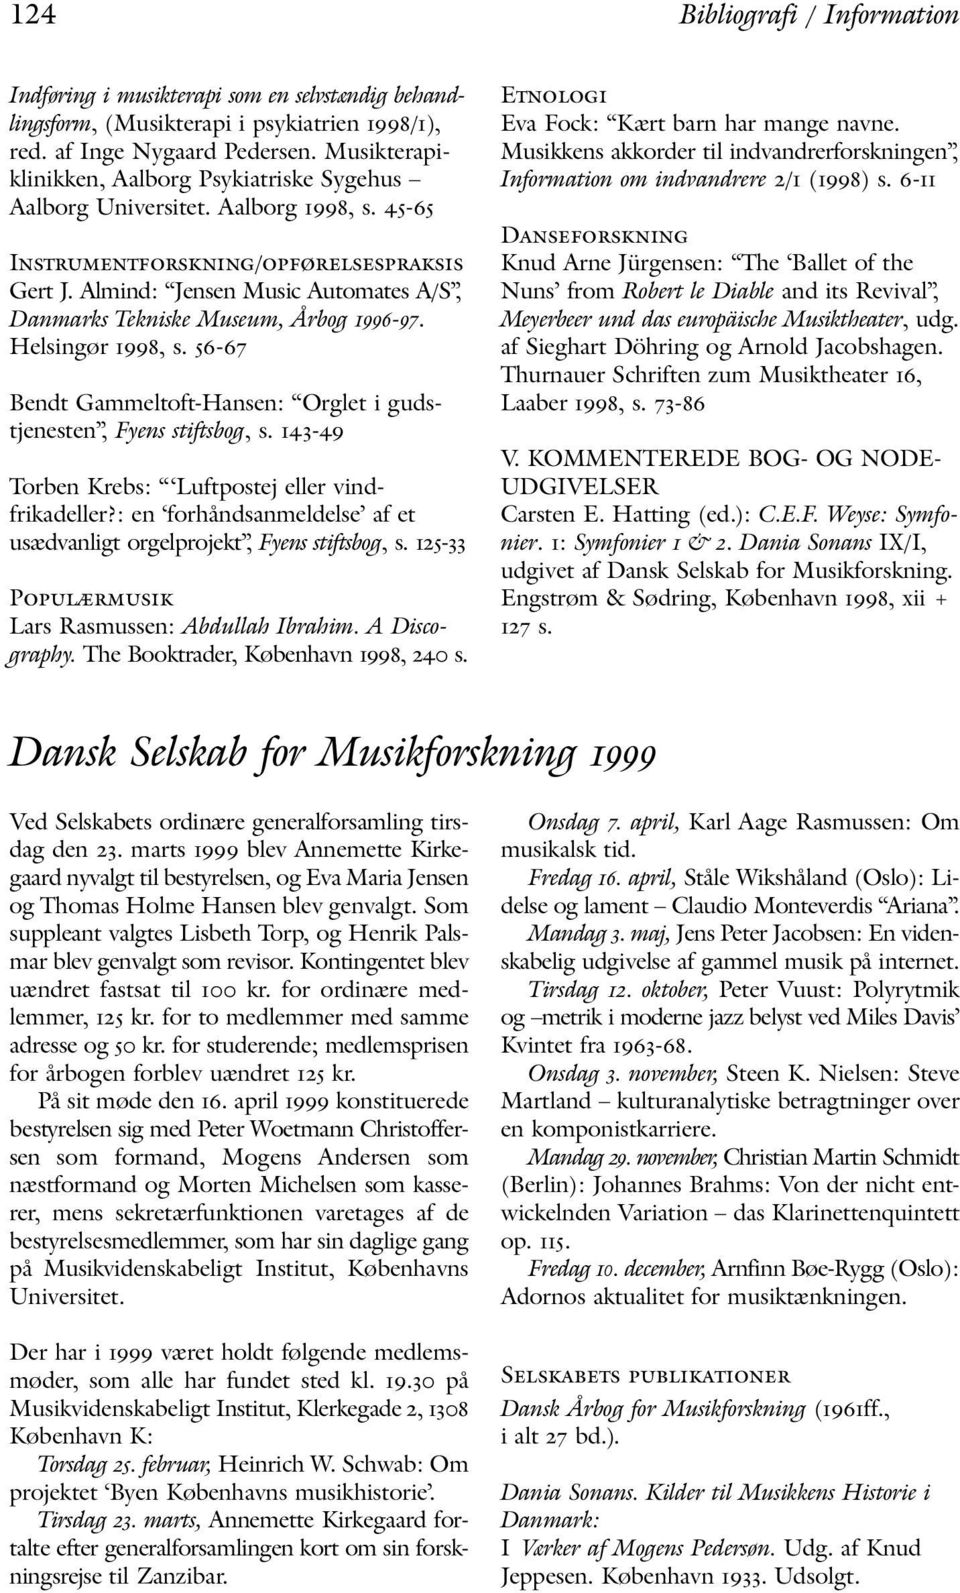 Dansk Selskab for Musikforskning PDF Free Download